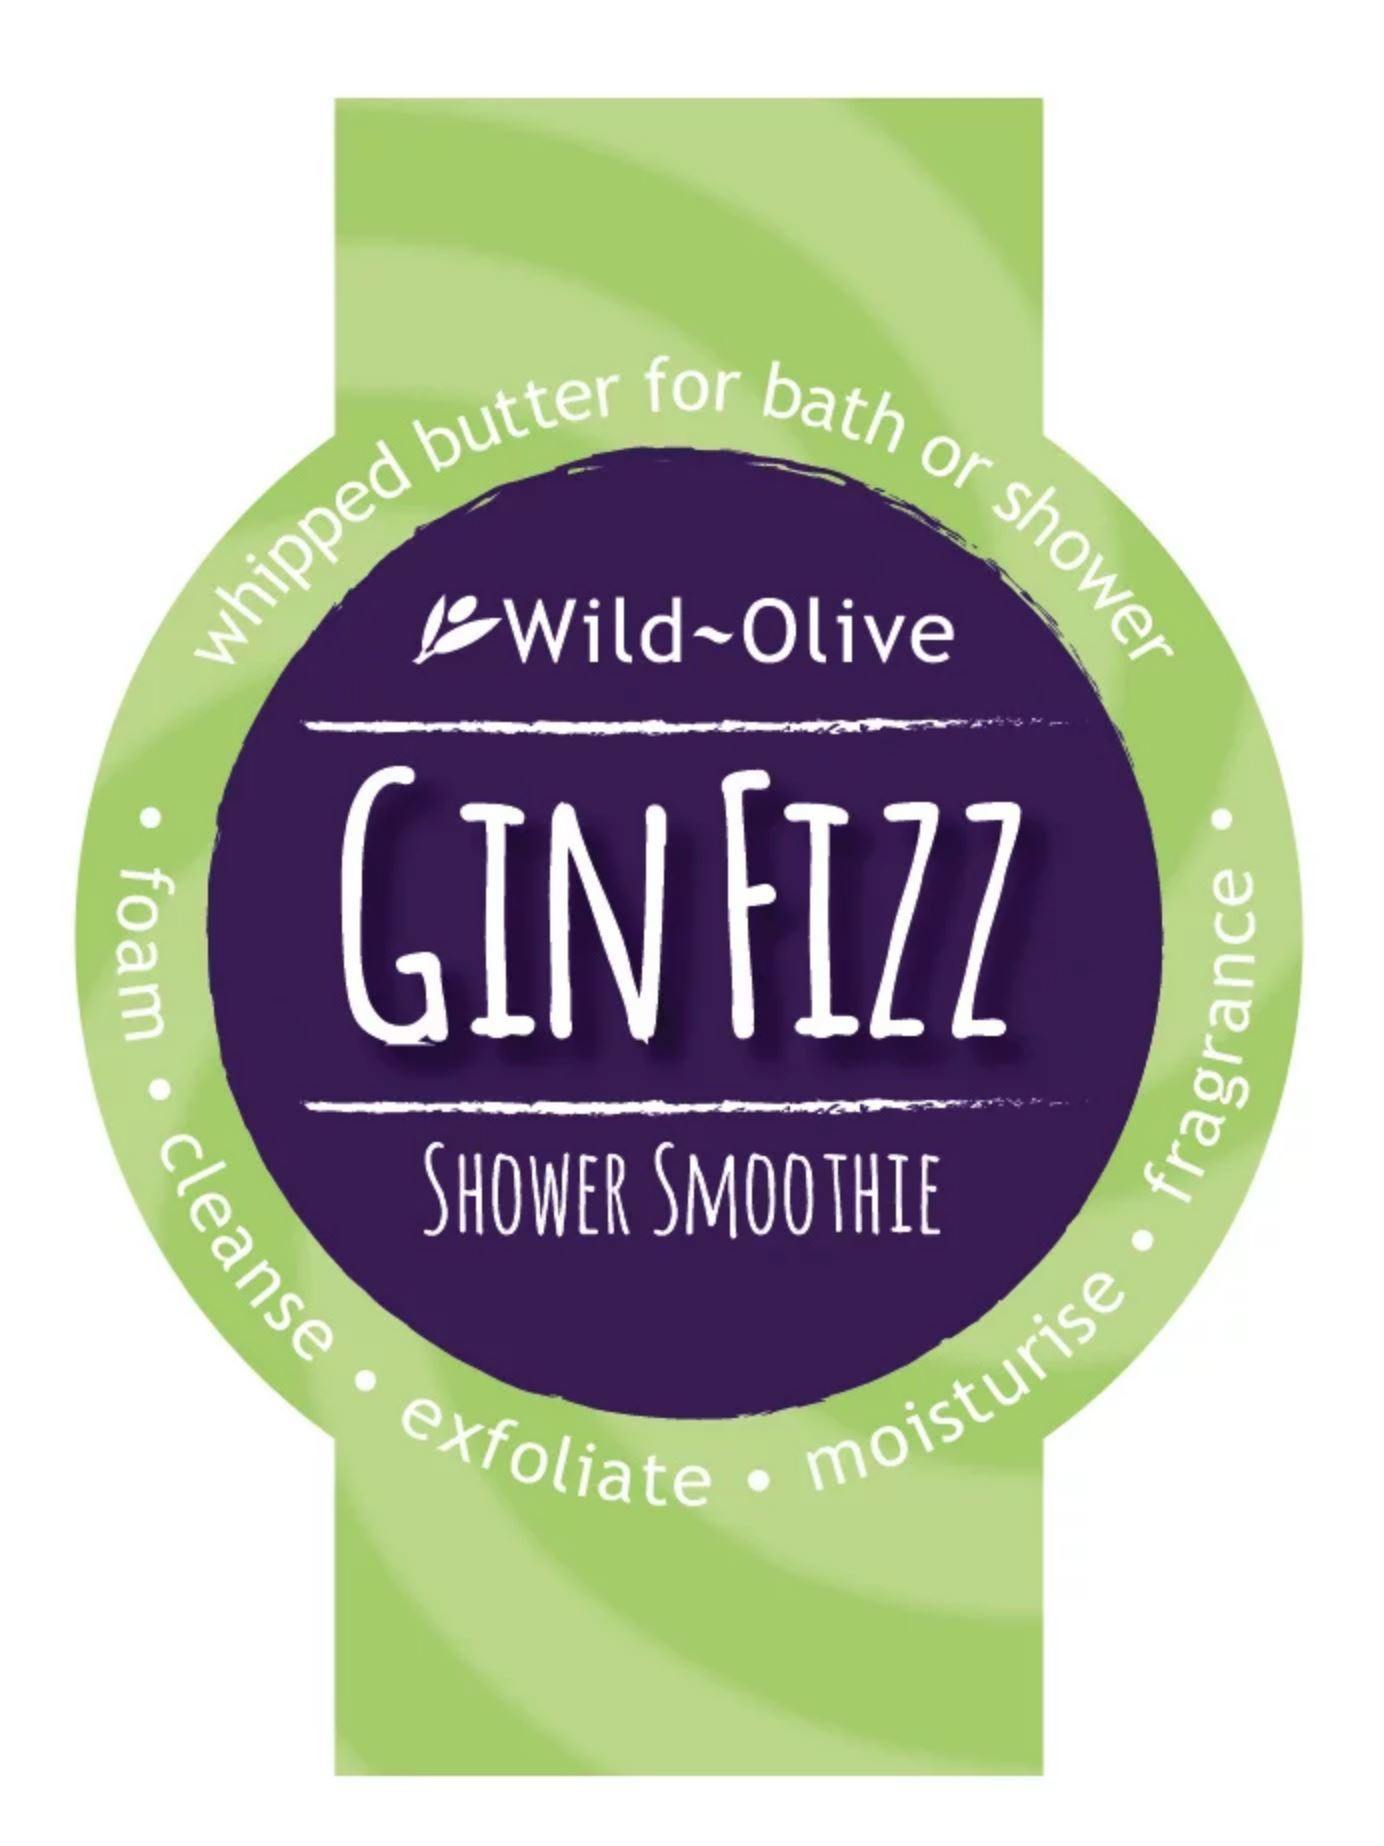 Gin Fizz Shower Smoothie Shower Smoothie Foxyavenue UK